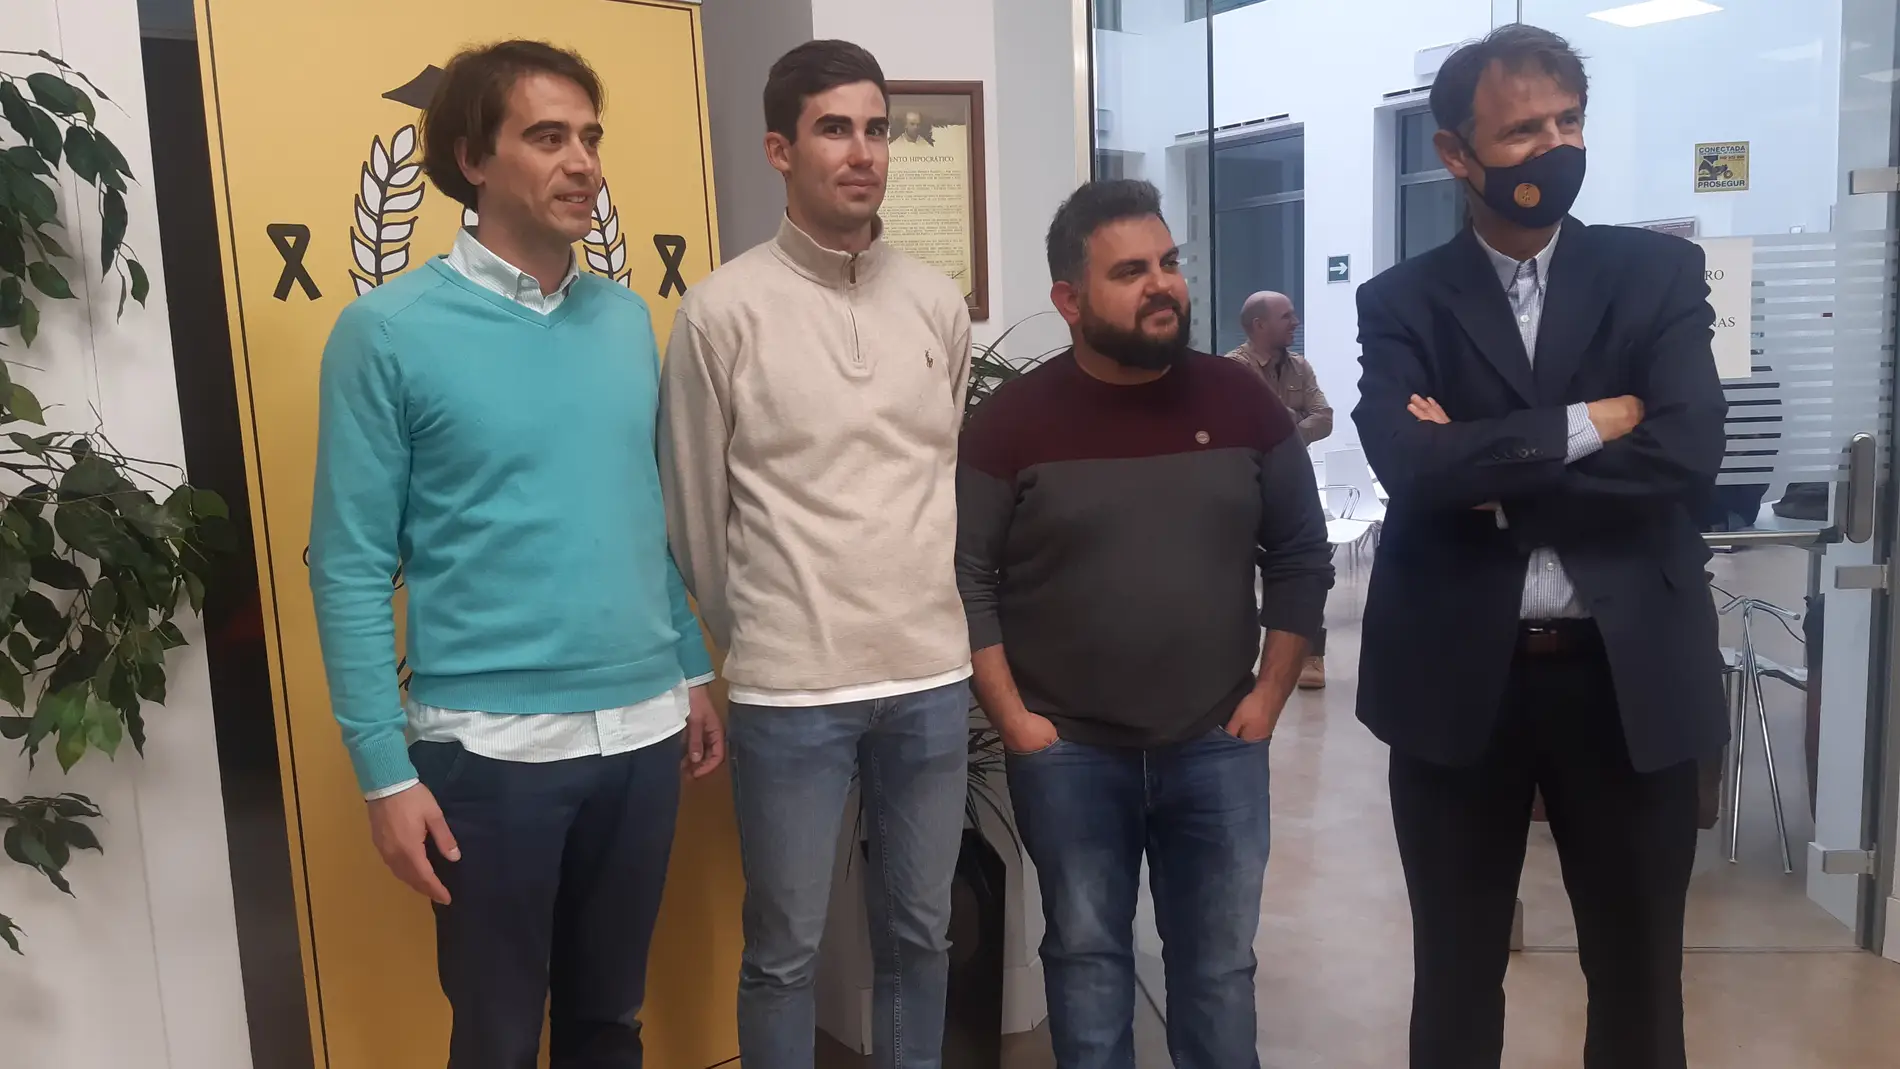 El proyecto "Iniciativa solidaria Albacete" volverá ala frontera para traer a España a refugiados ucranianos